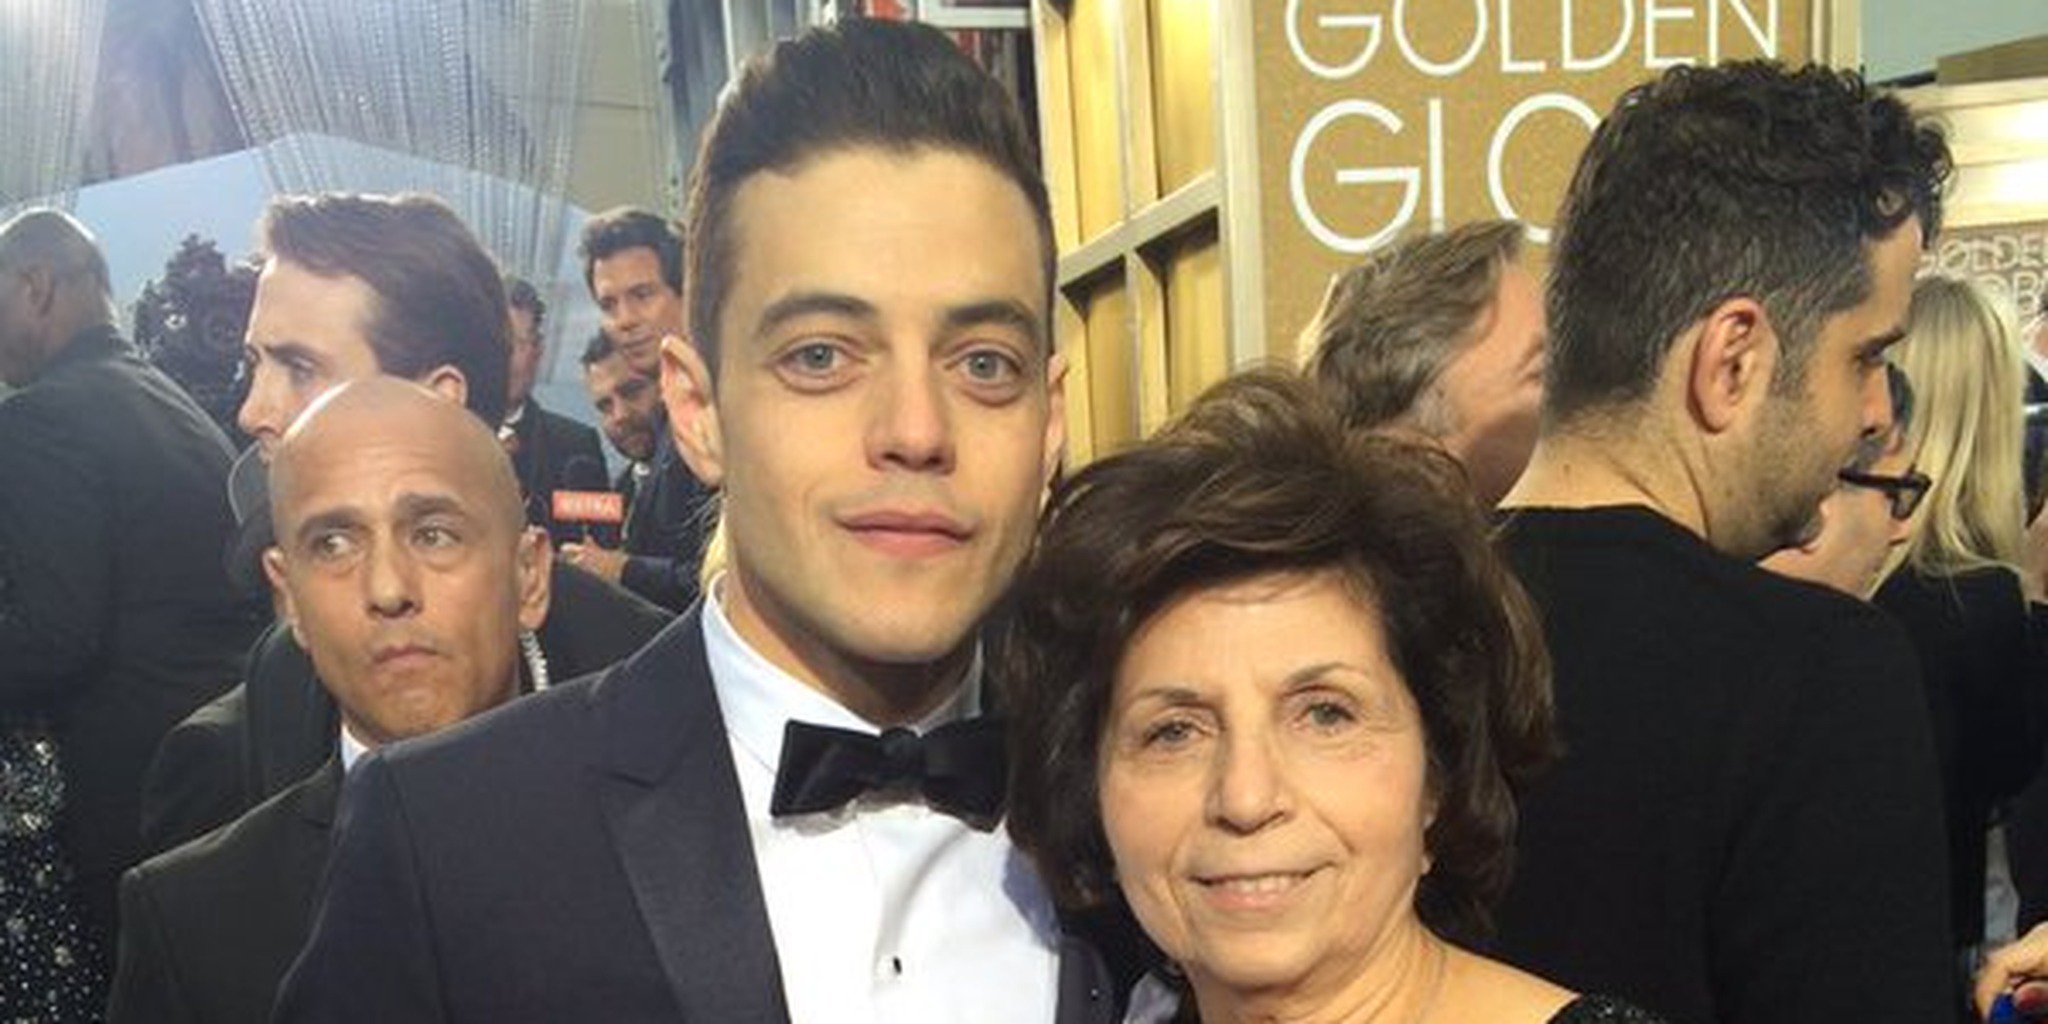 Rami Malek wins Golden Globe as Mercury in 'Bohemian Rhapsody'